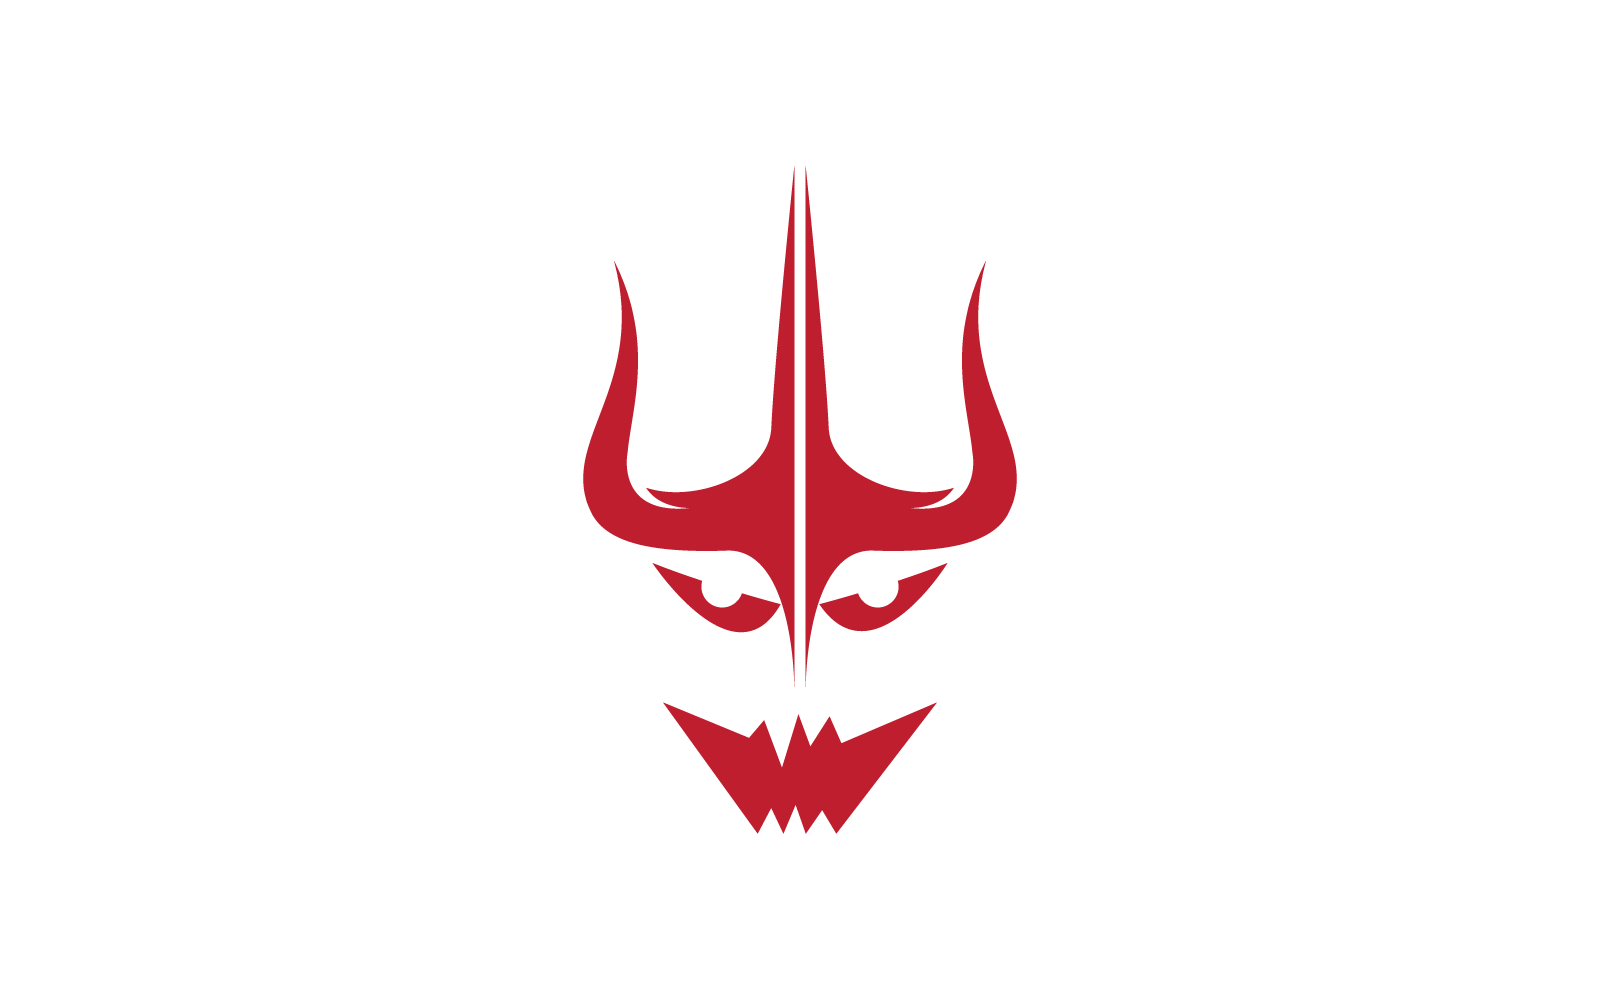 Devil logo ilustration flat design